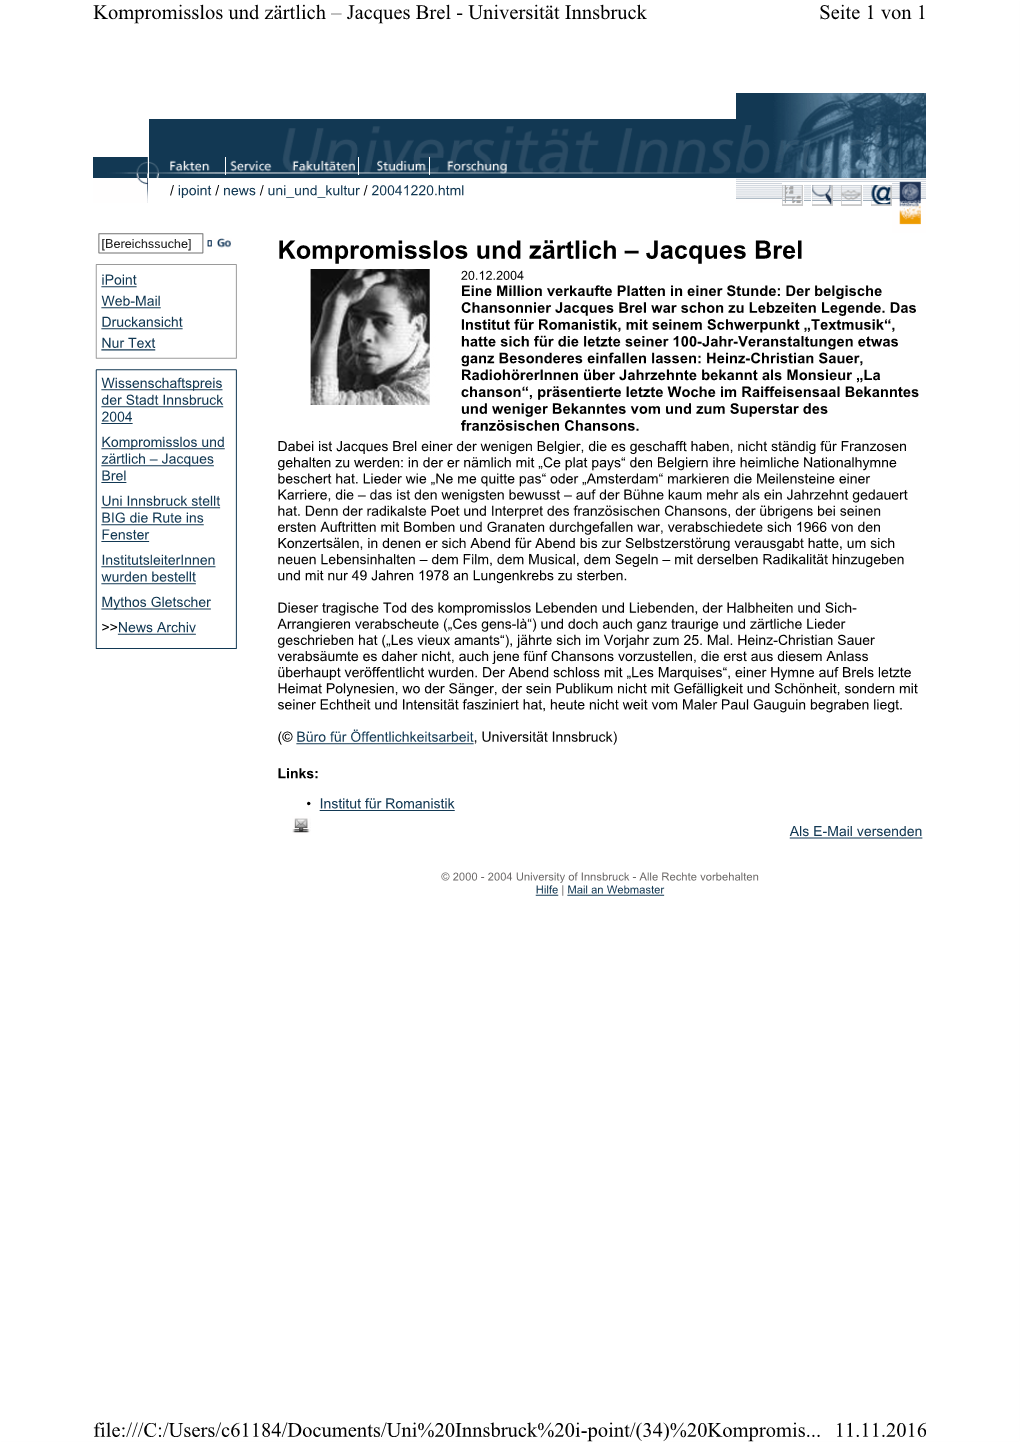 Jacques Brel - Universität Innsbruck Seite 1 Von 1